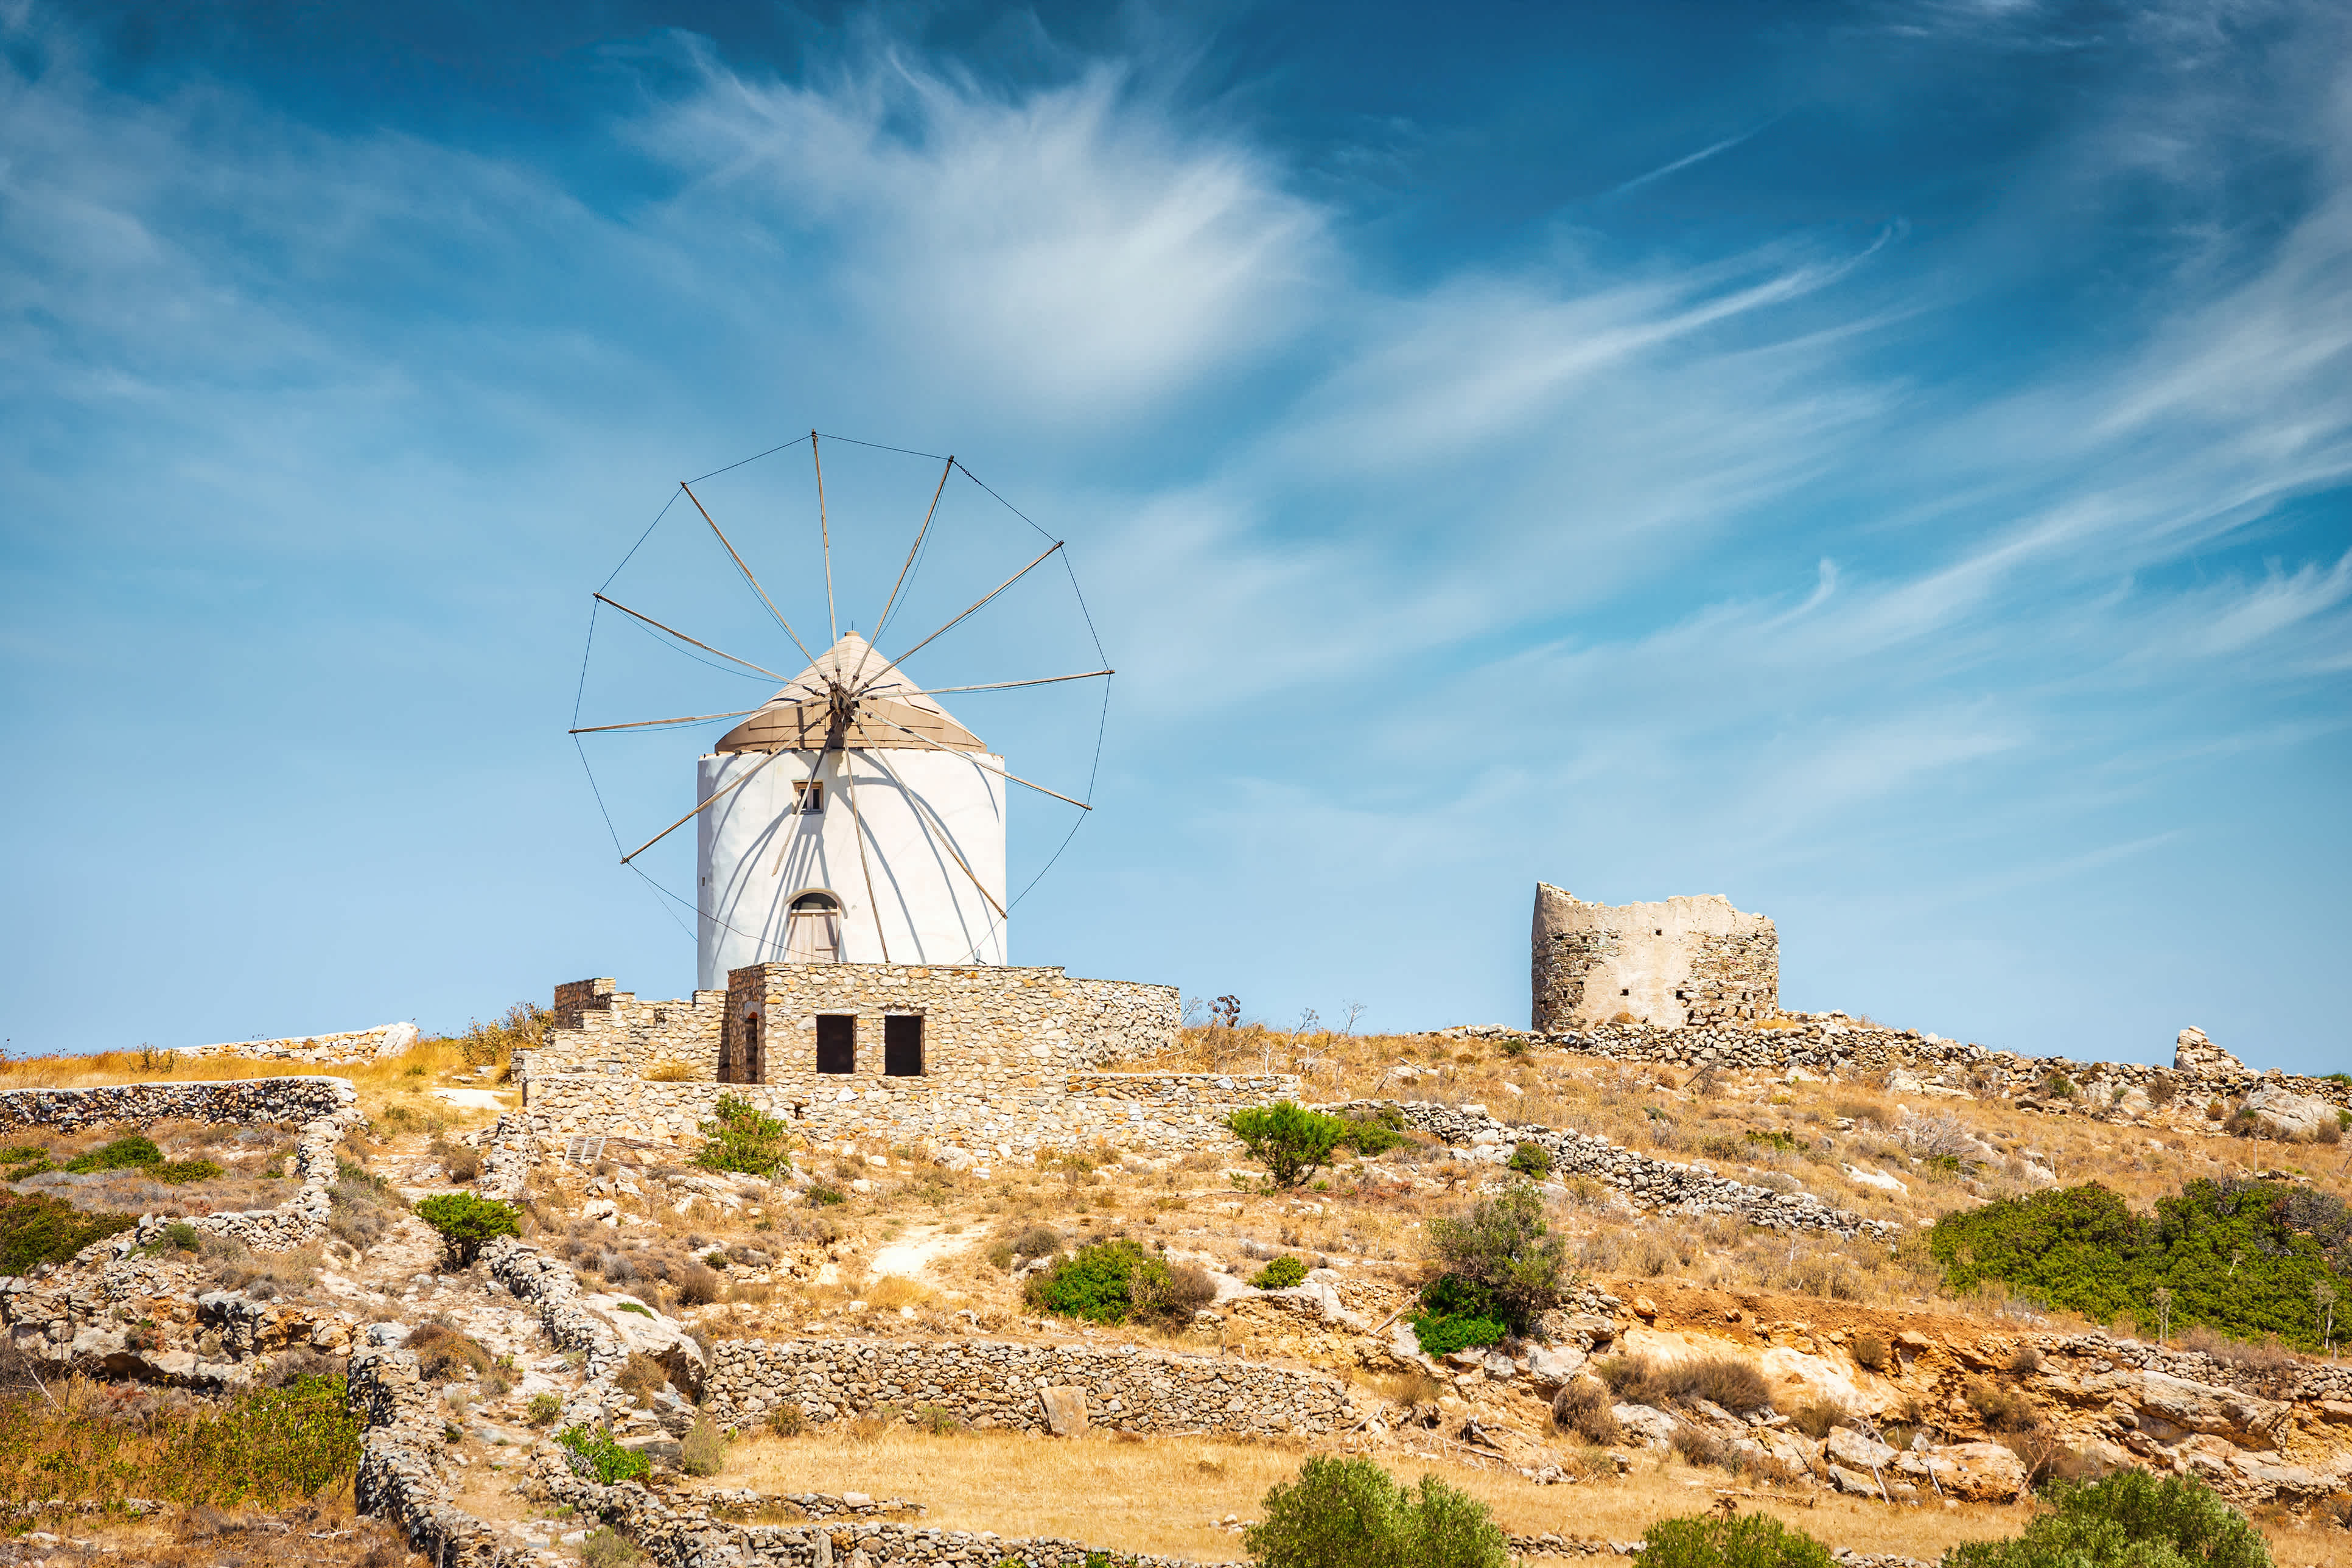 Malerische Dörfer mit Windmühlen - zu erleben bei einem Paros Urlaub.